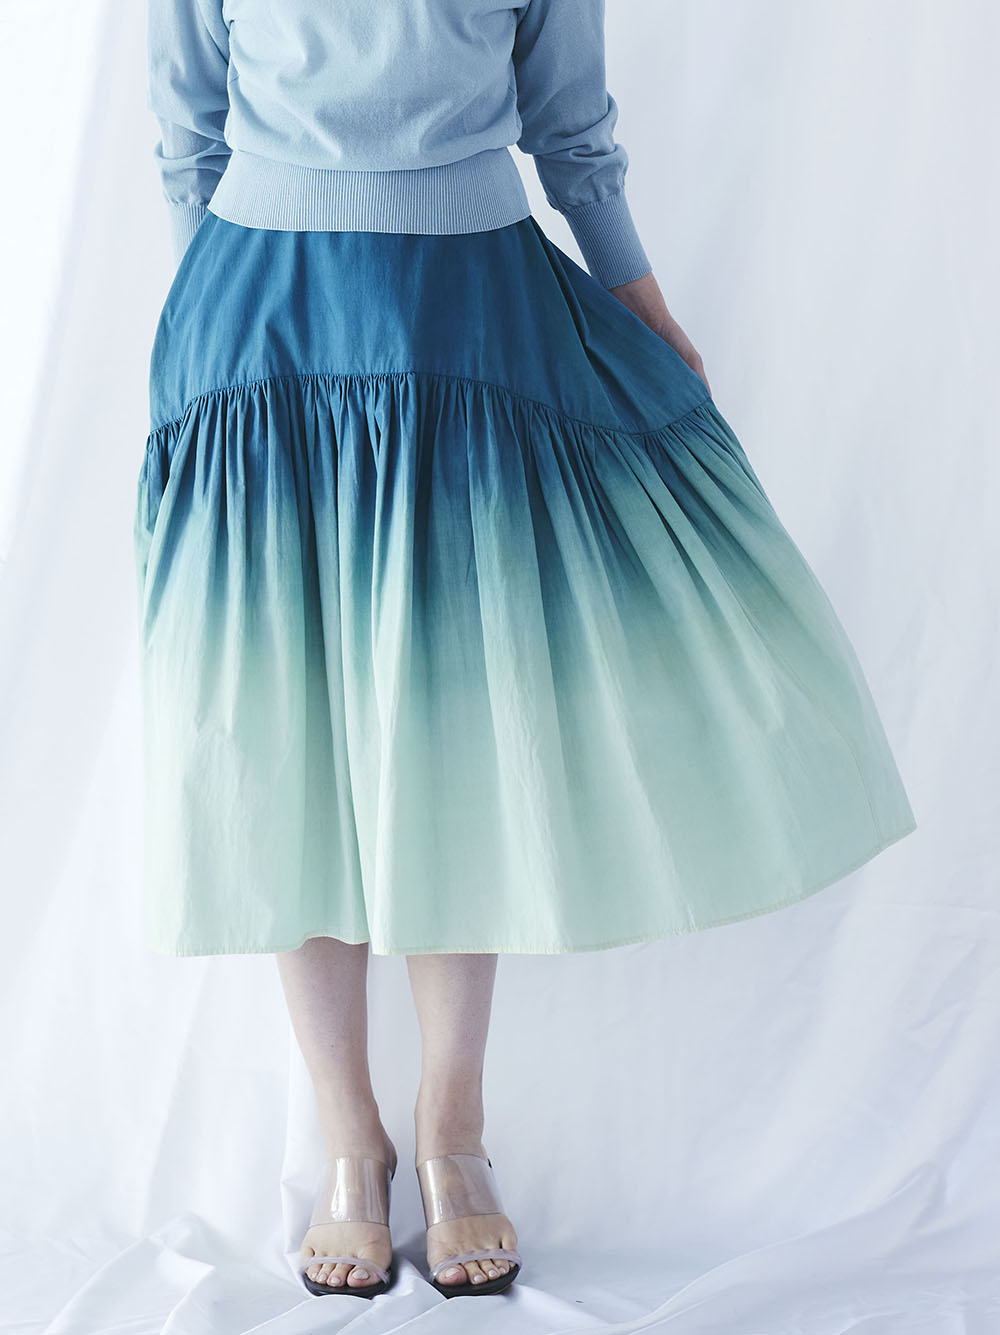 natural dye gathered skirt